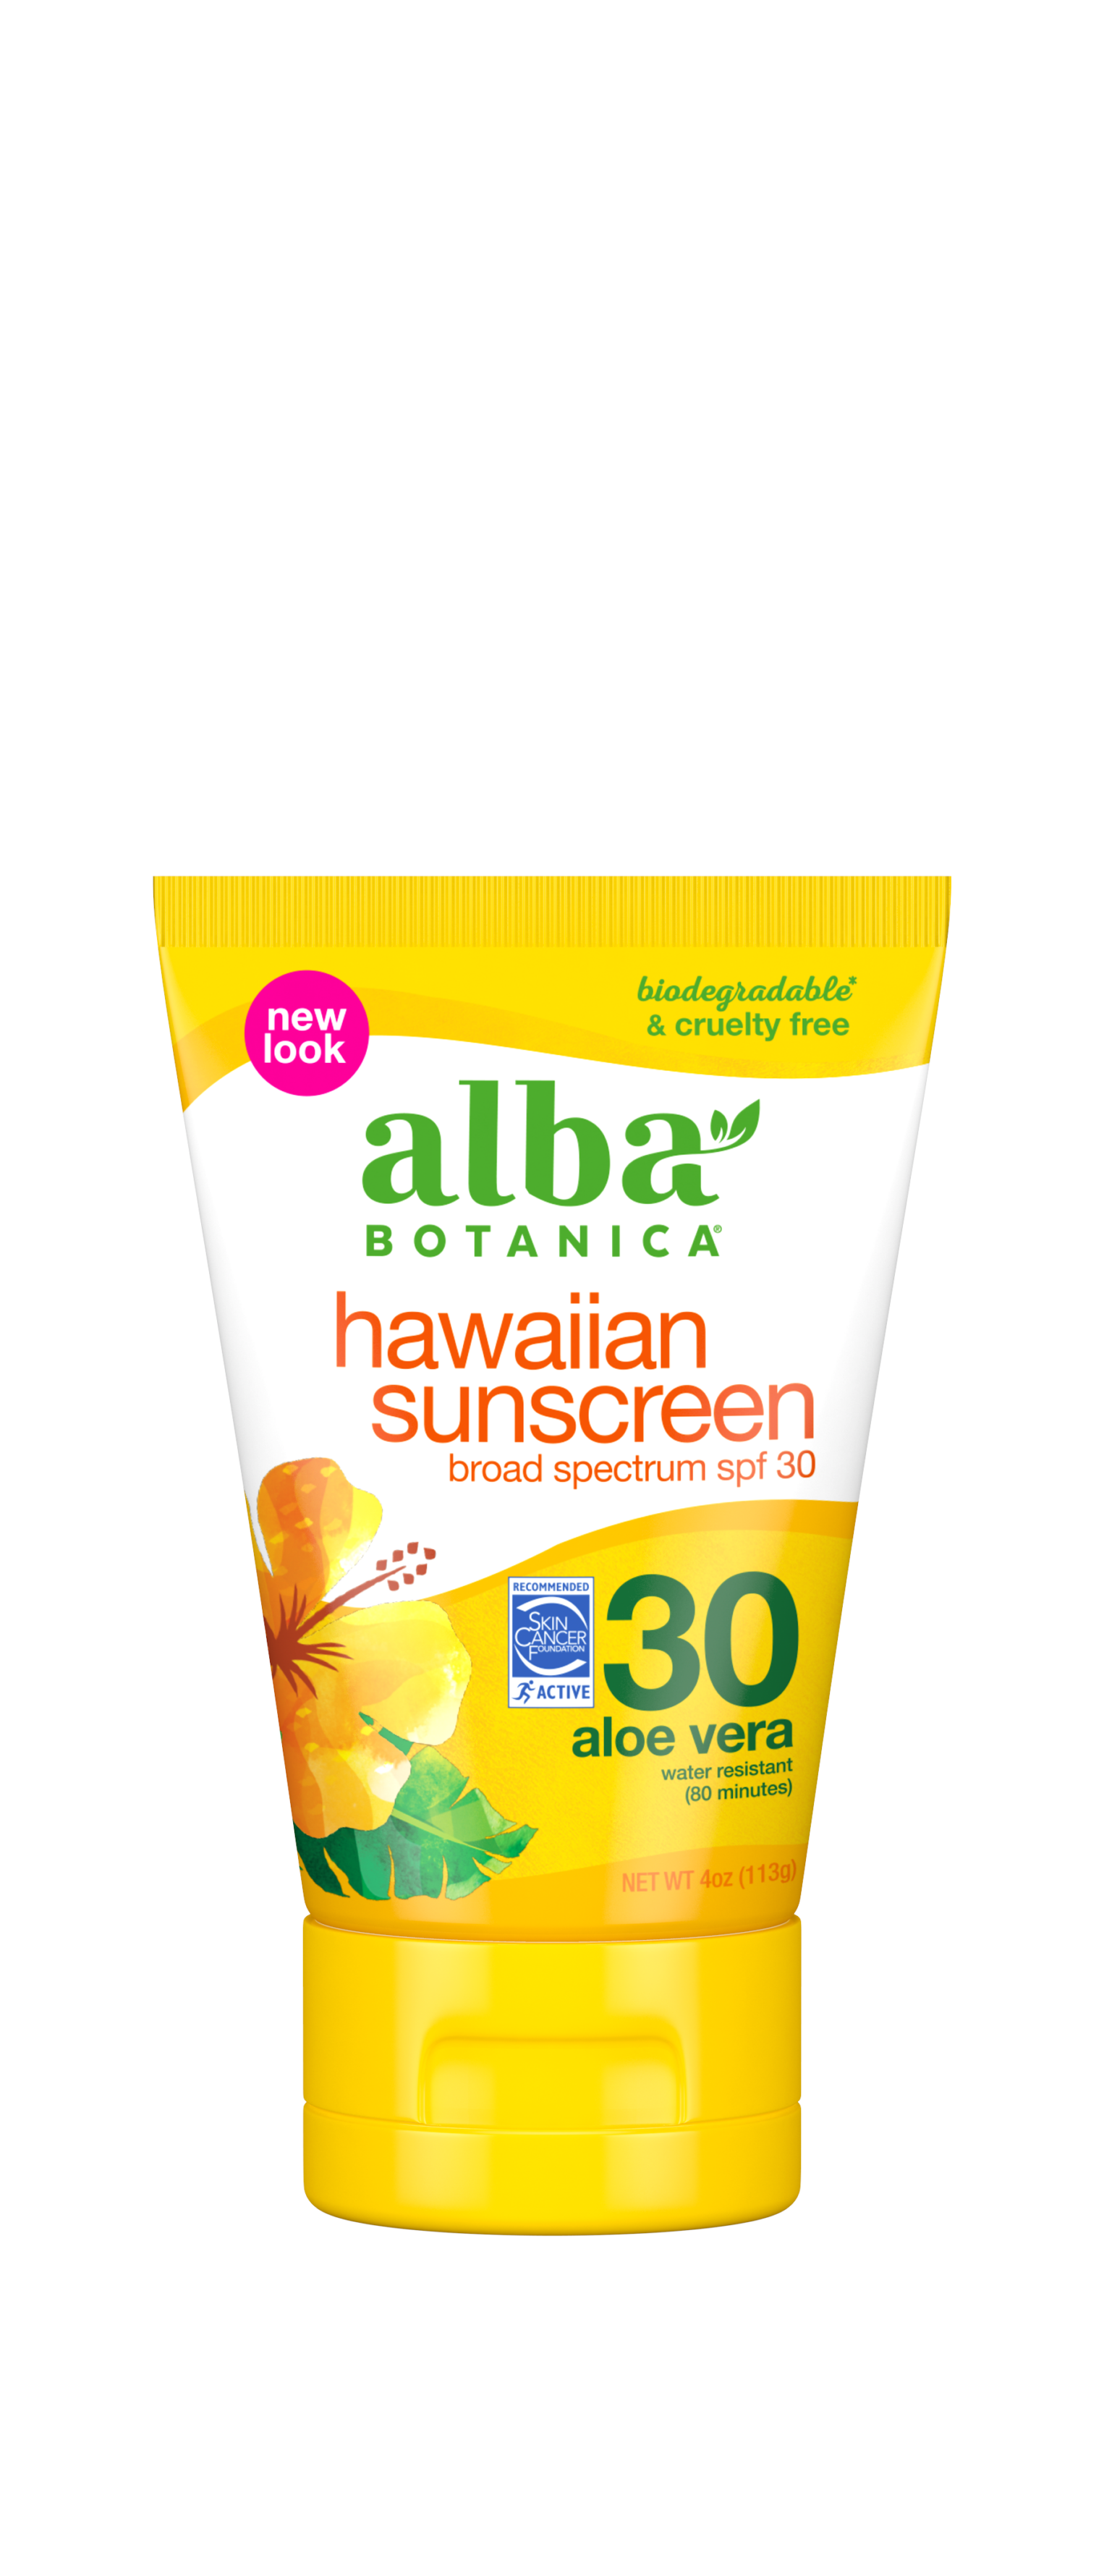 hawaiian sunscreen - Alba Botanica